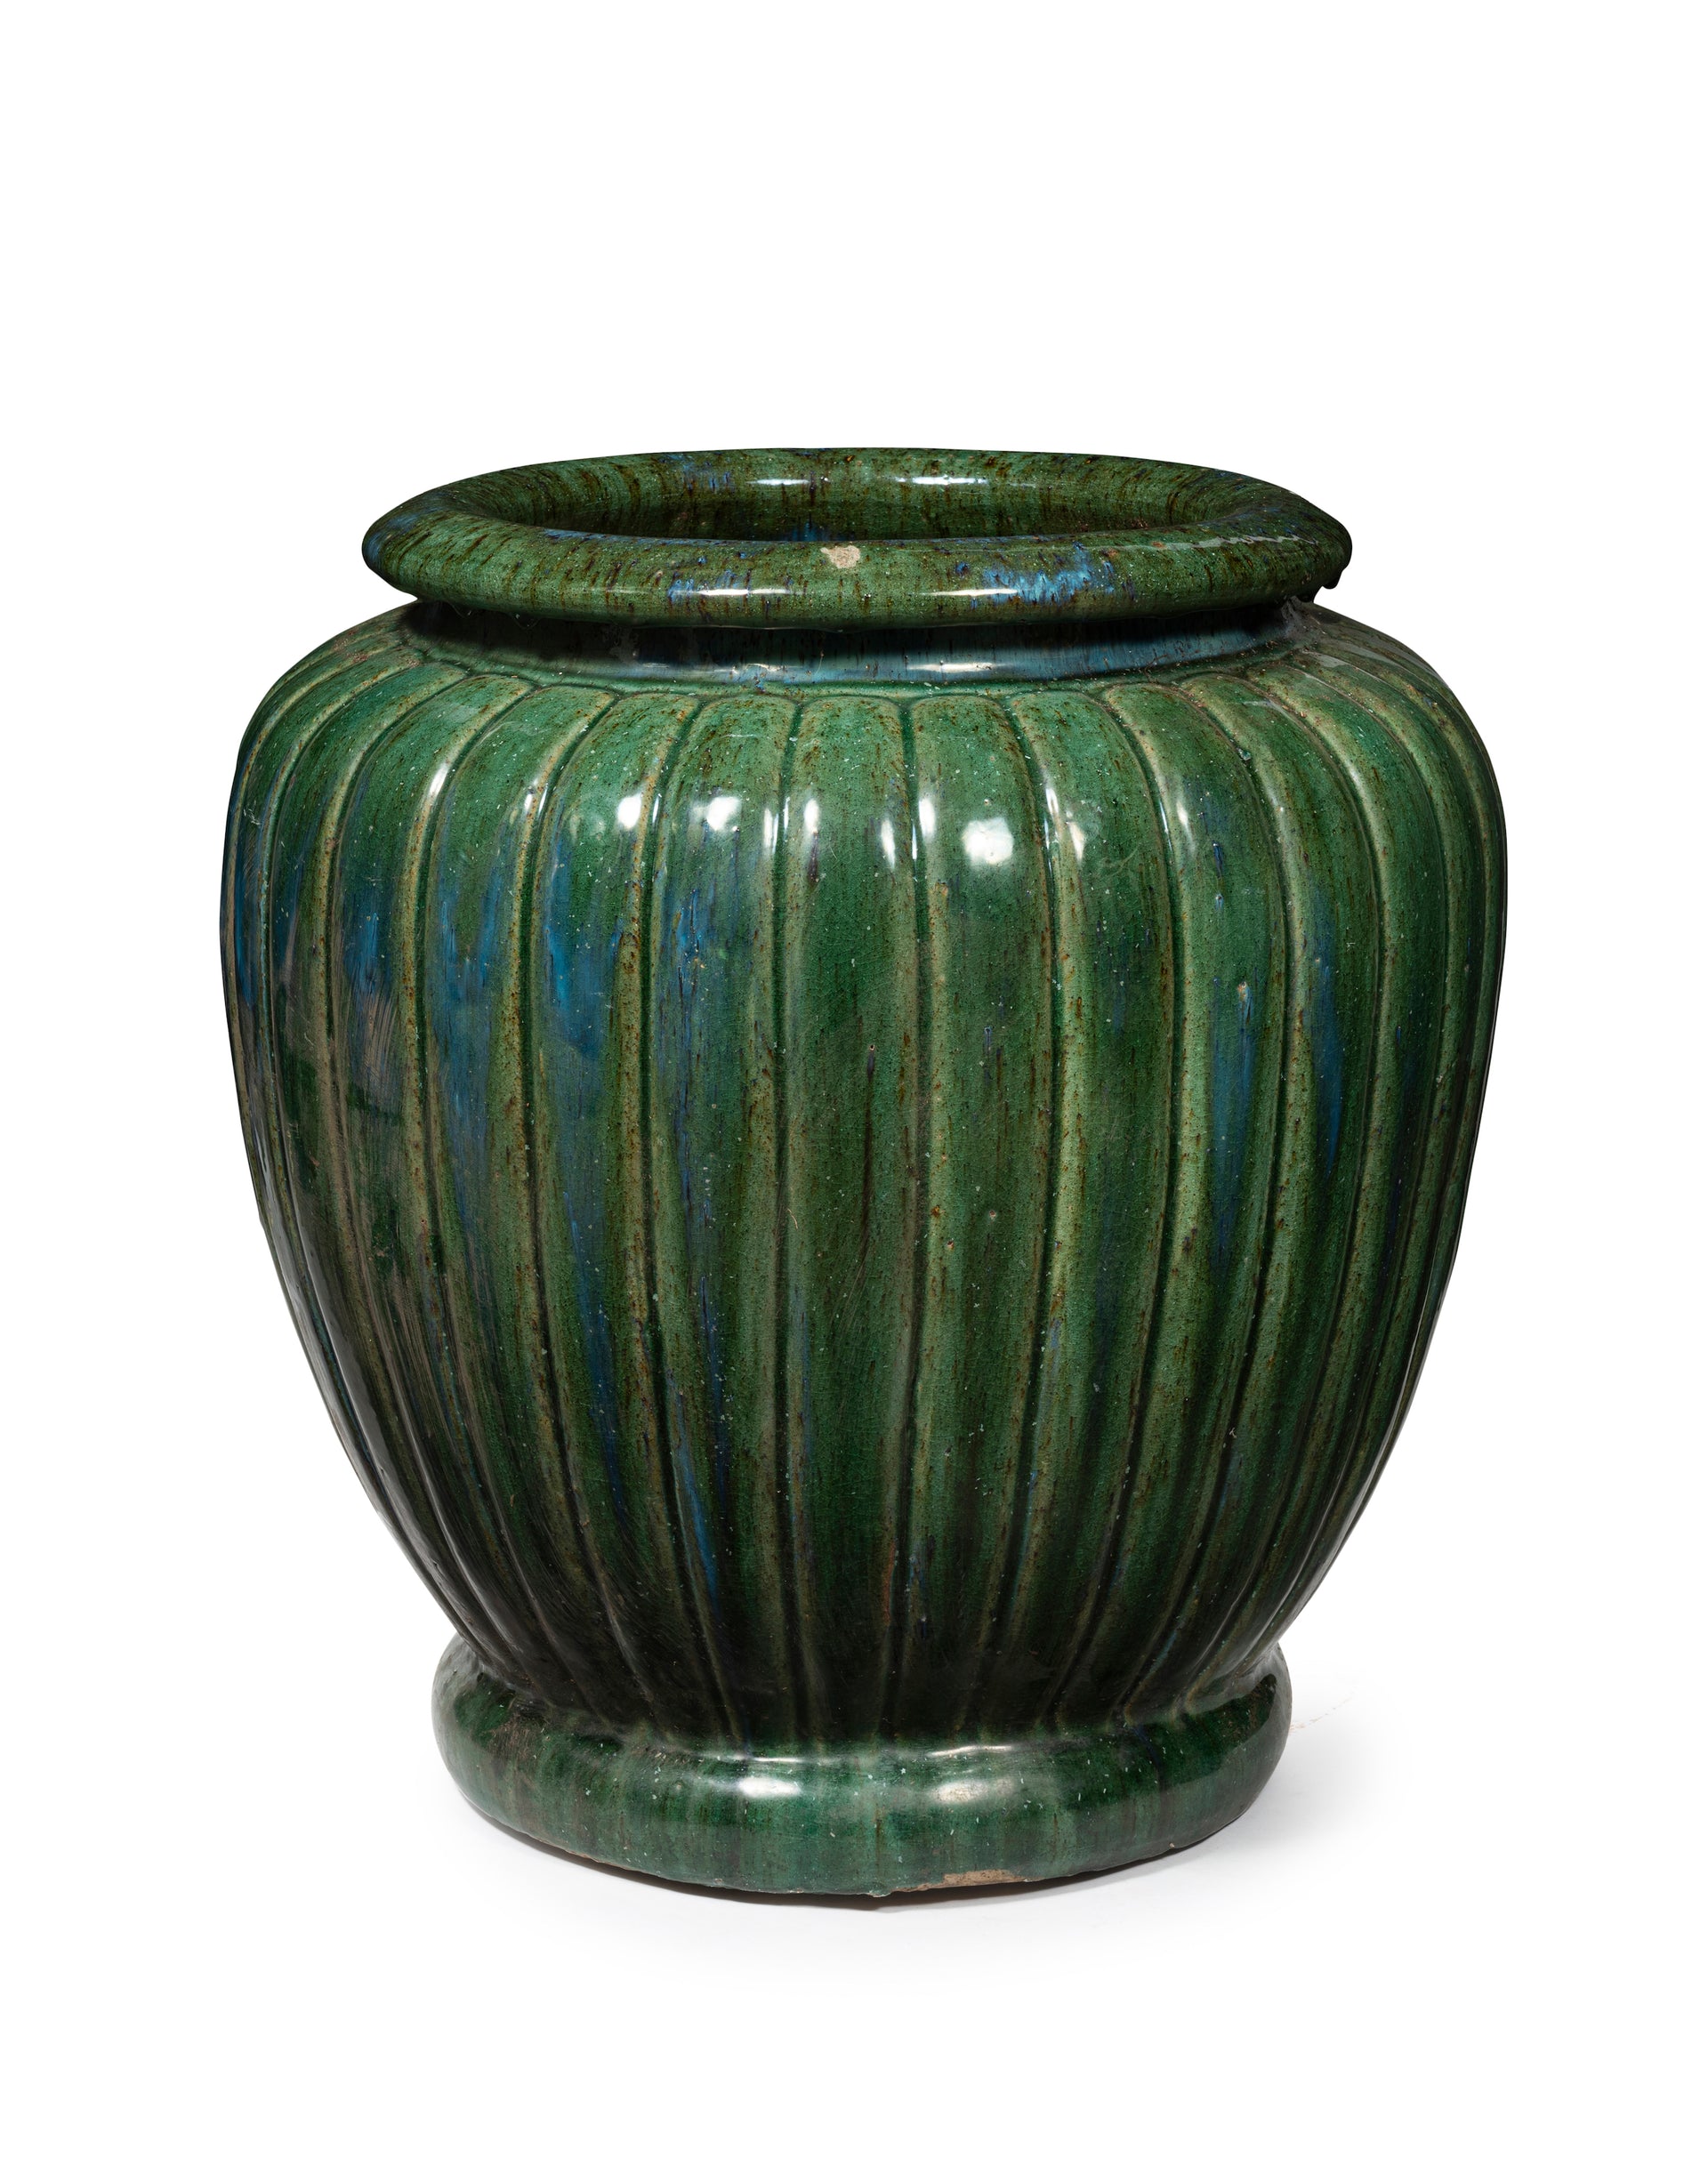 SOLD A large green glazed ribbed design urn, Japanese